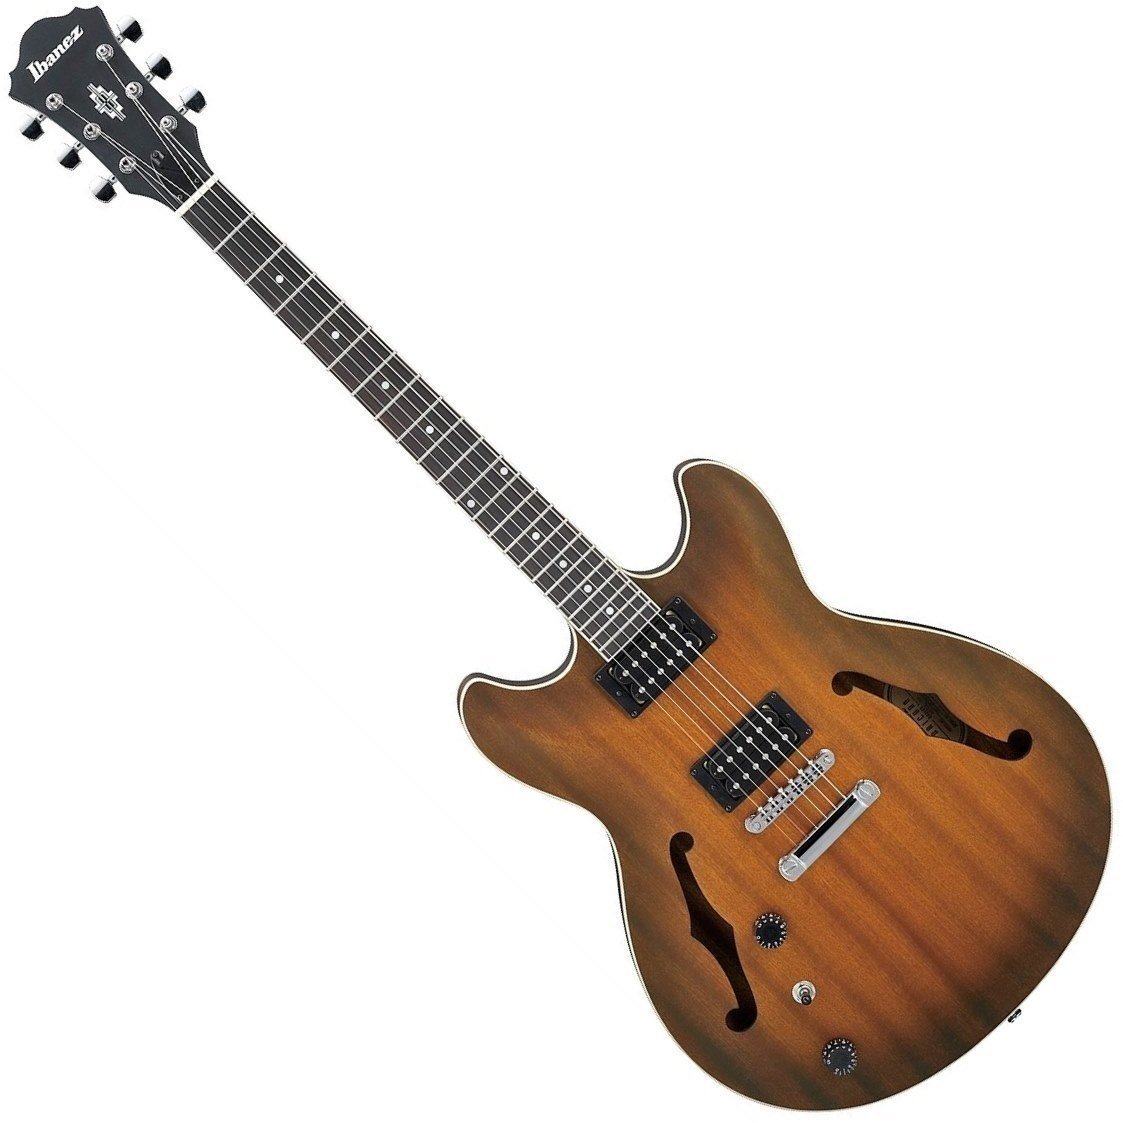 Gitara semi-akustyczna Ibanez AS53L-TF Tobacco Flat